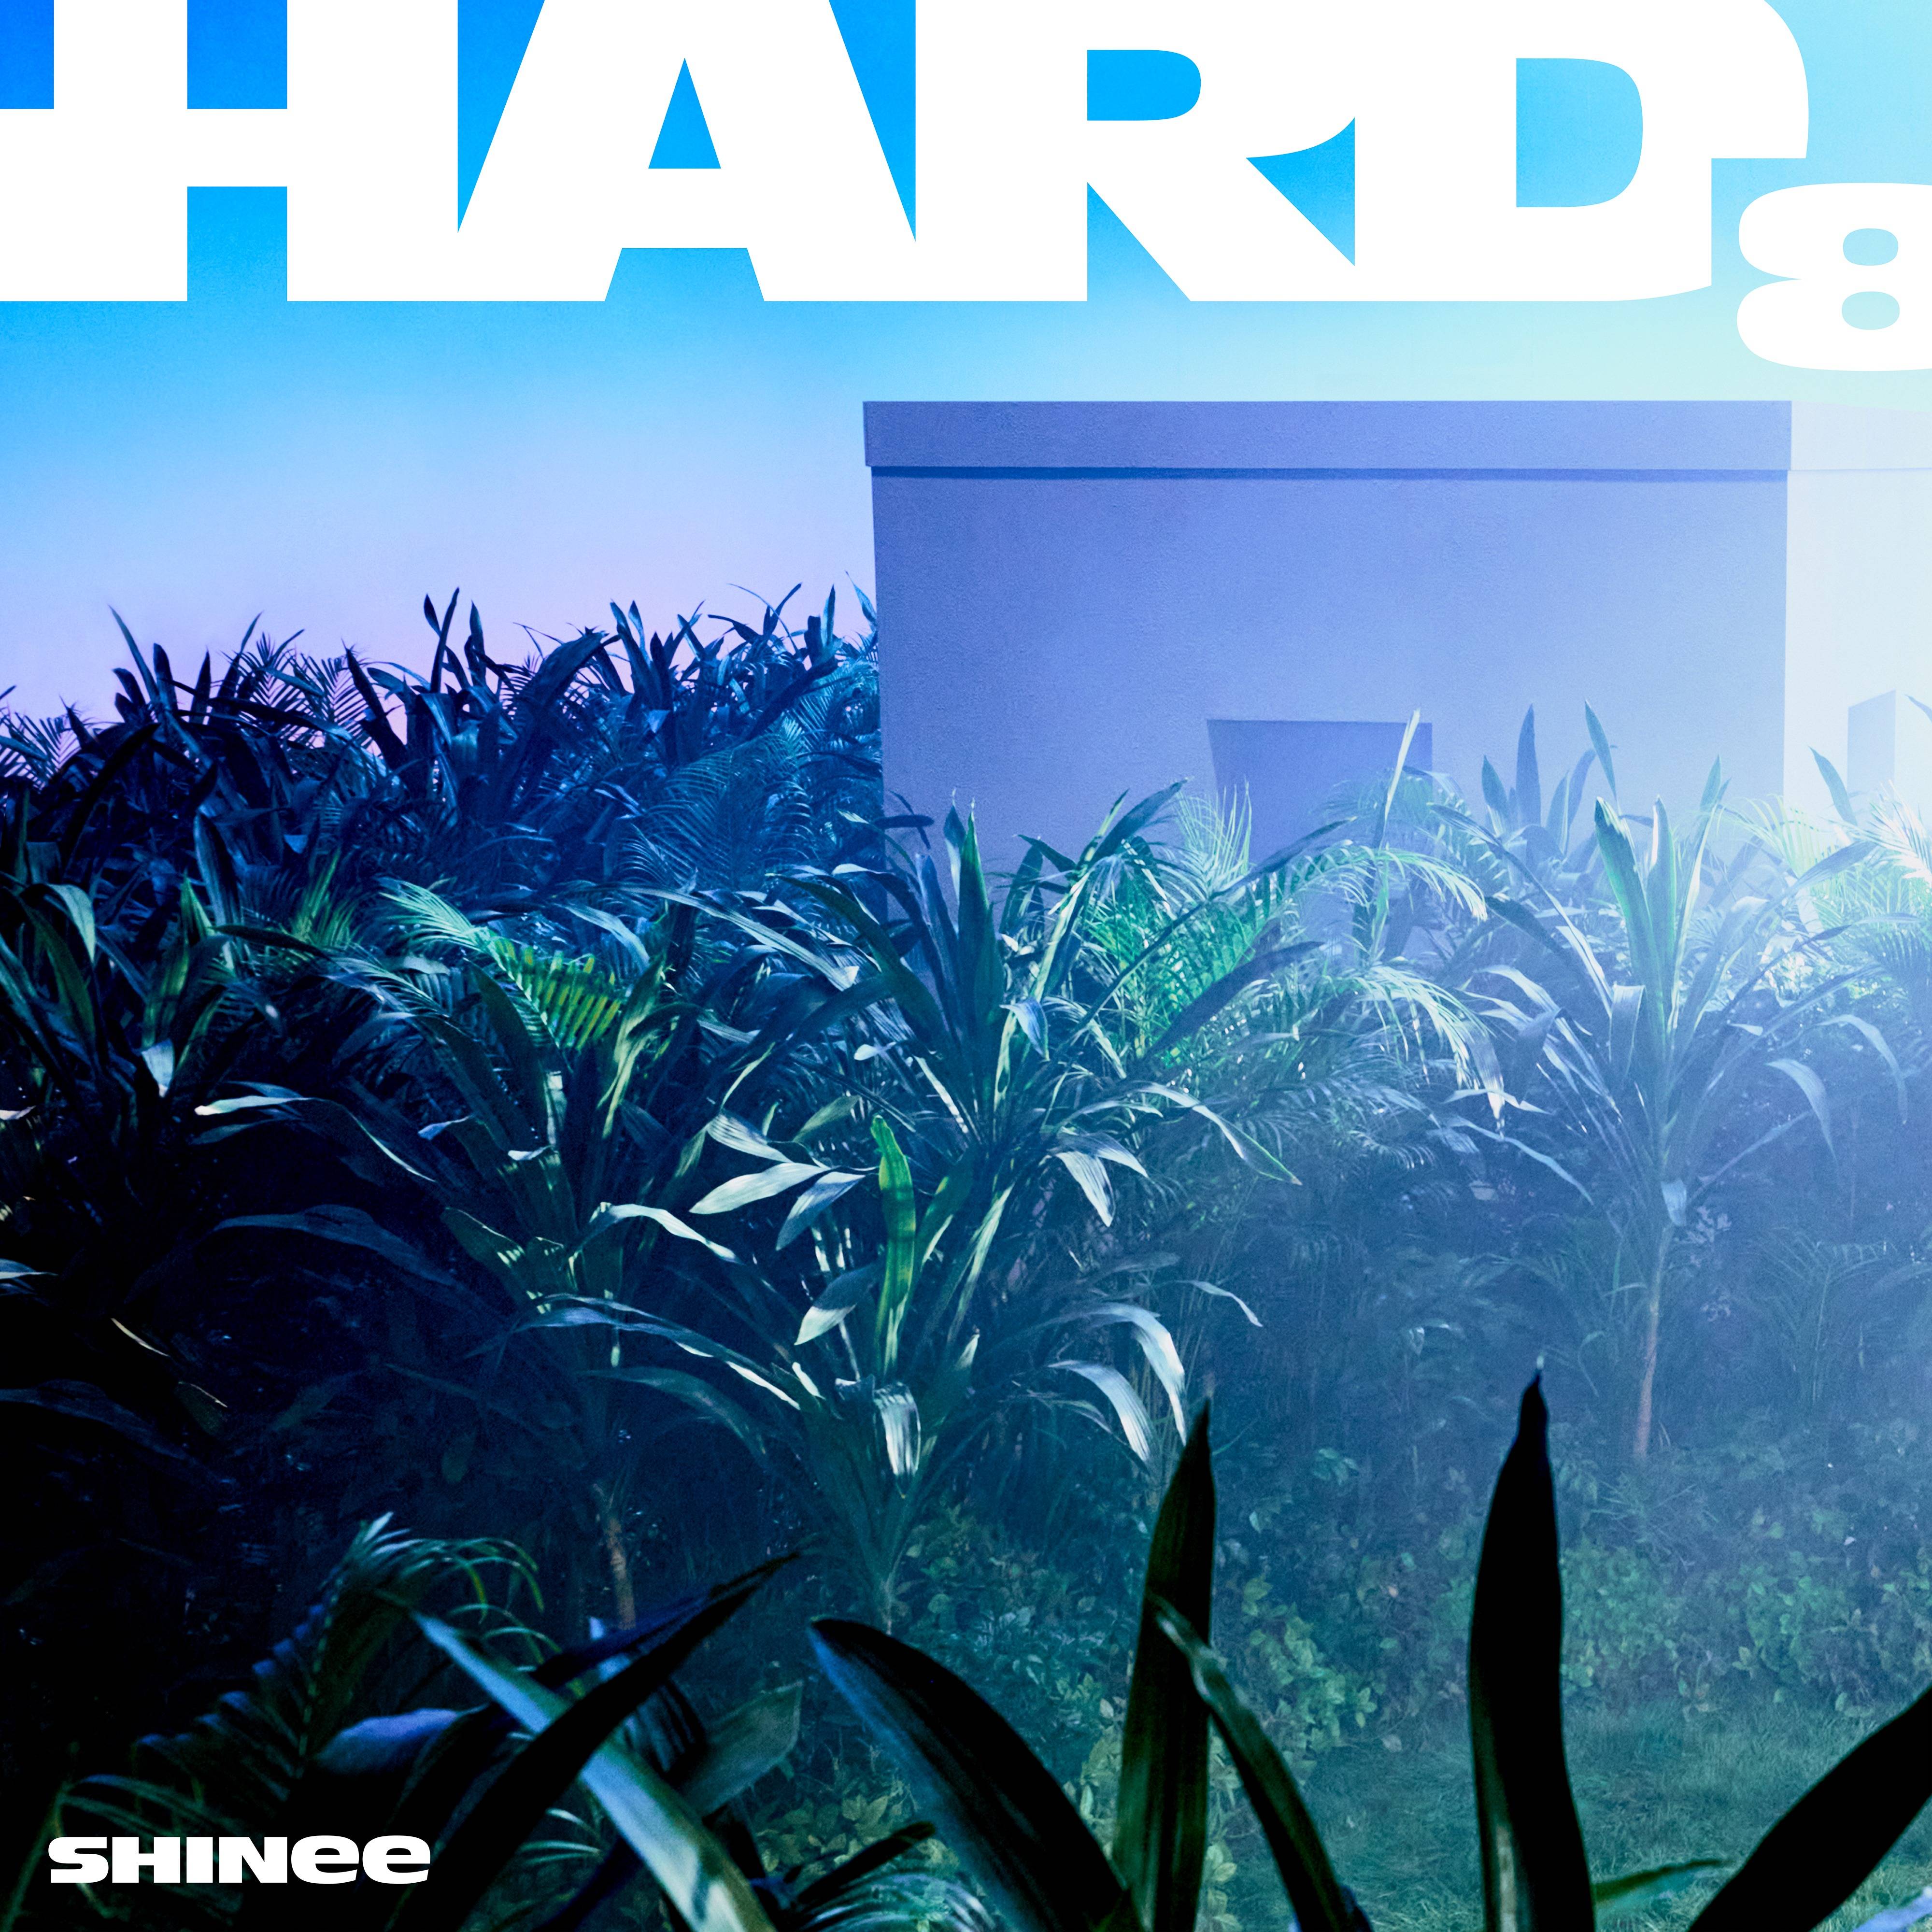 샤이니 정규 8집 『HARD』 Clue Poster 2 + 풀이 | 인스티즈